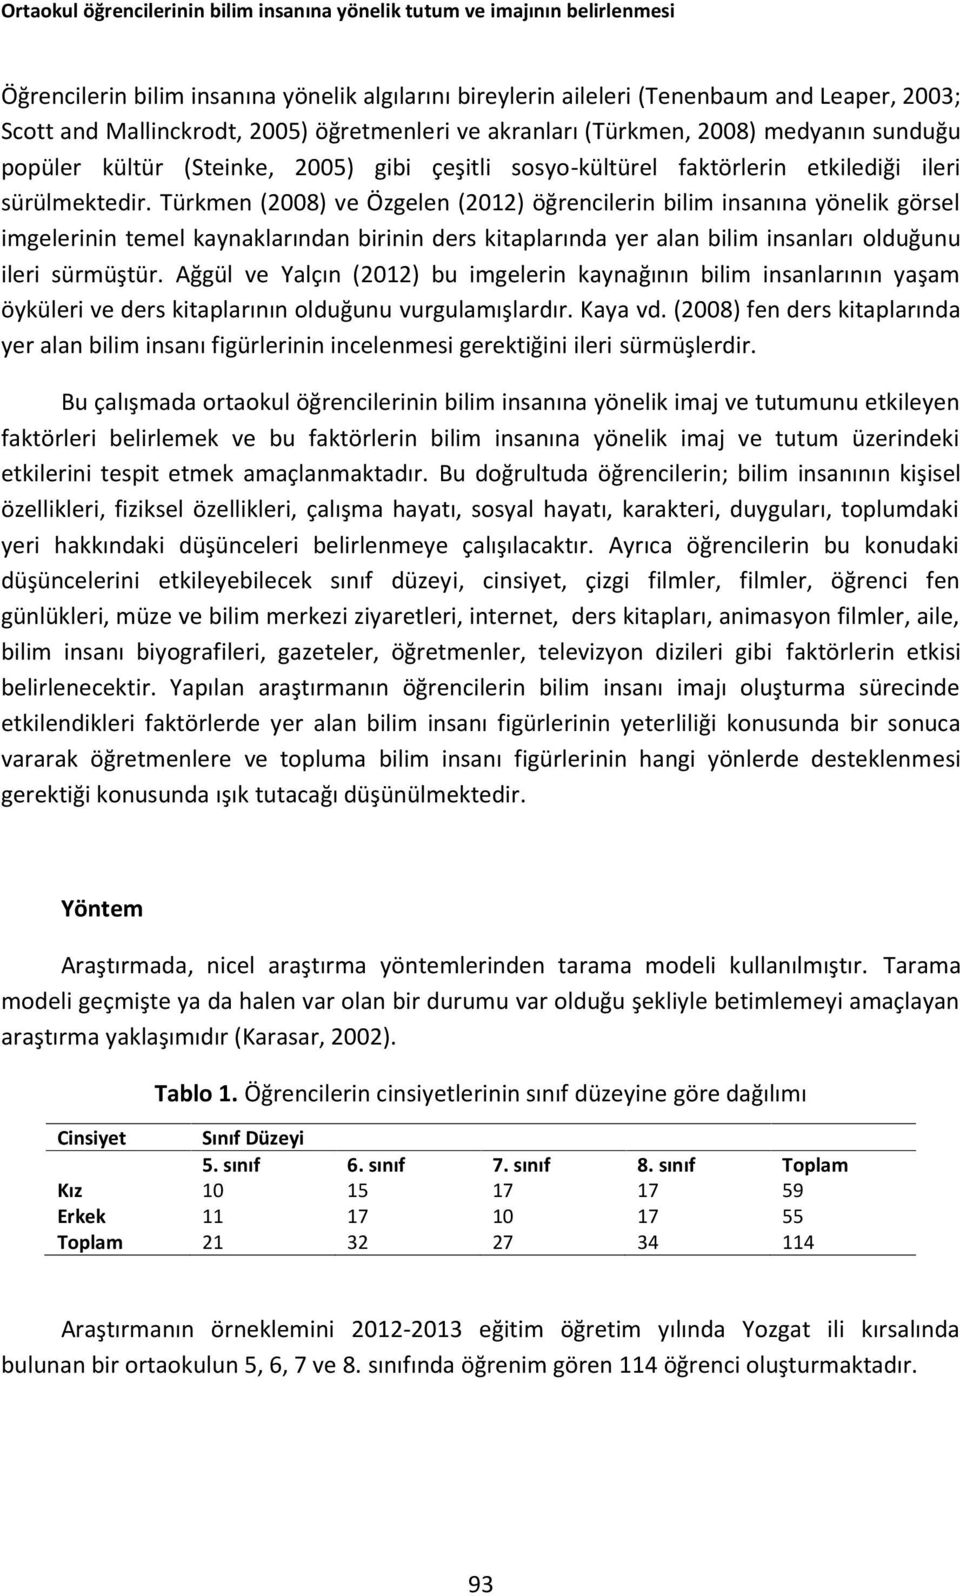 Türkmen (2008) ve Özgelen (2012) öğrencilerin bilim insanına yönelik görsel imgelerinin temel kaynaklarından birinin ders kitaplarında yer alan bilim insanları olduğunu ileri sürmüştür.